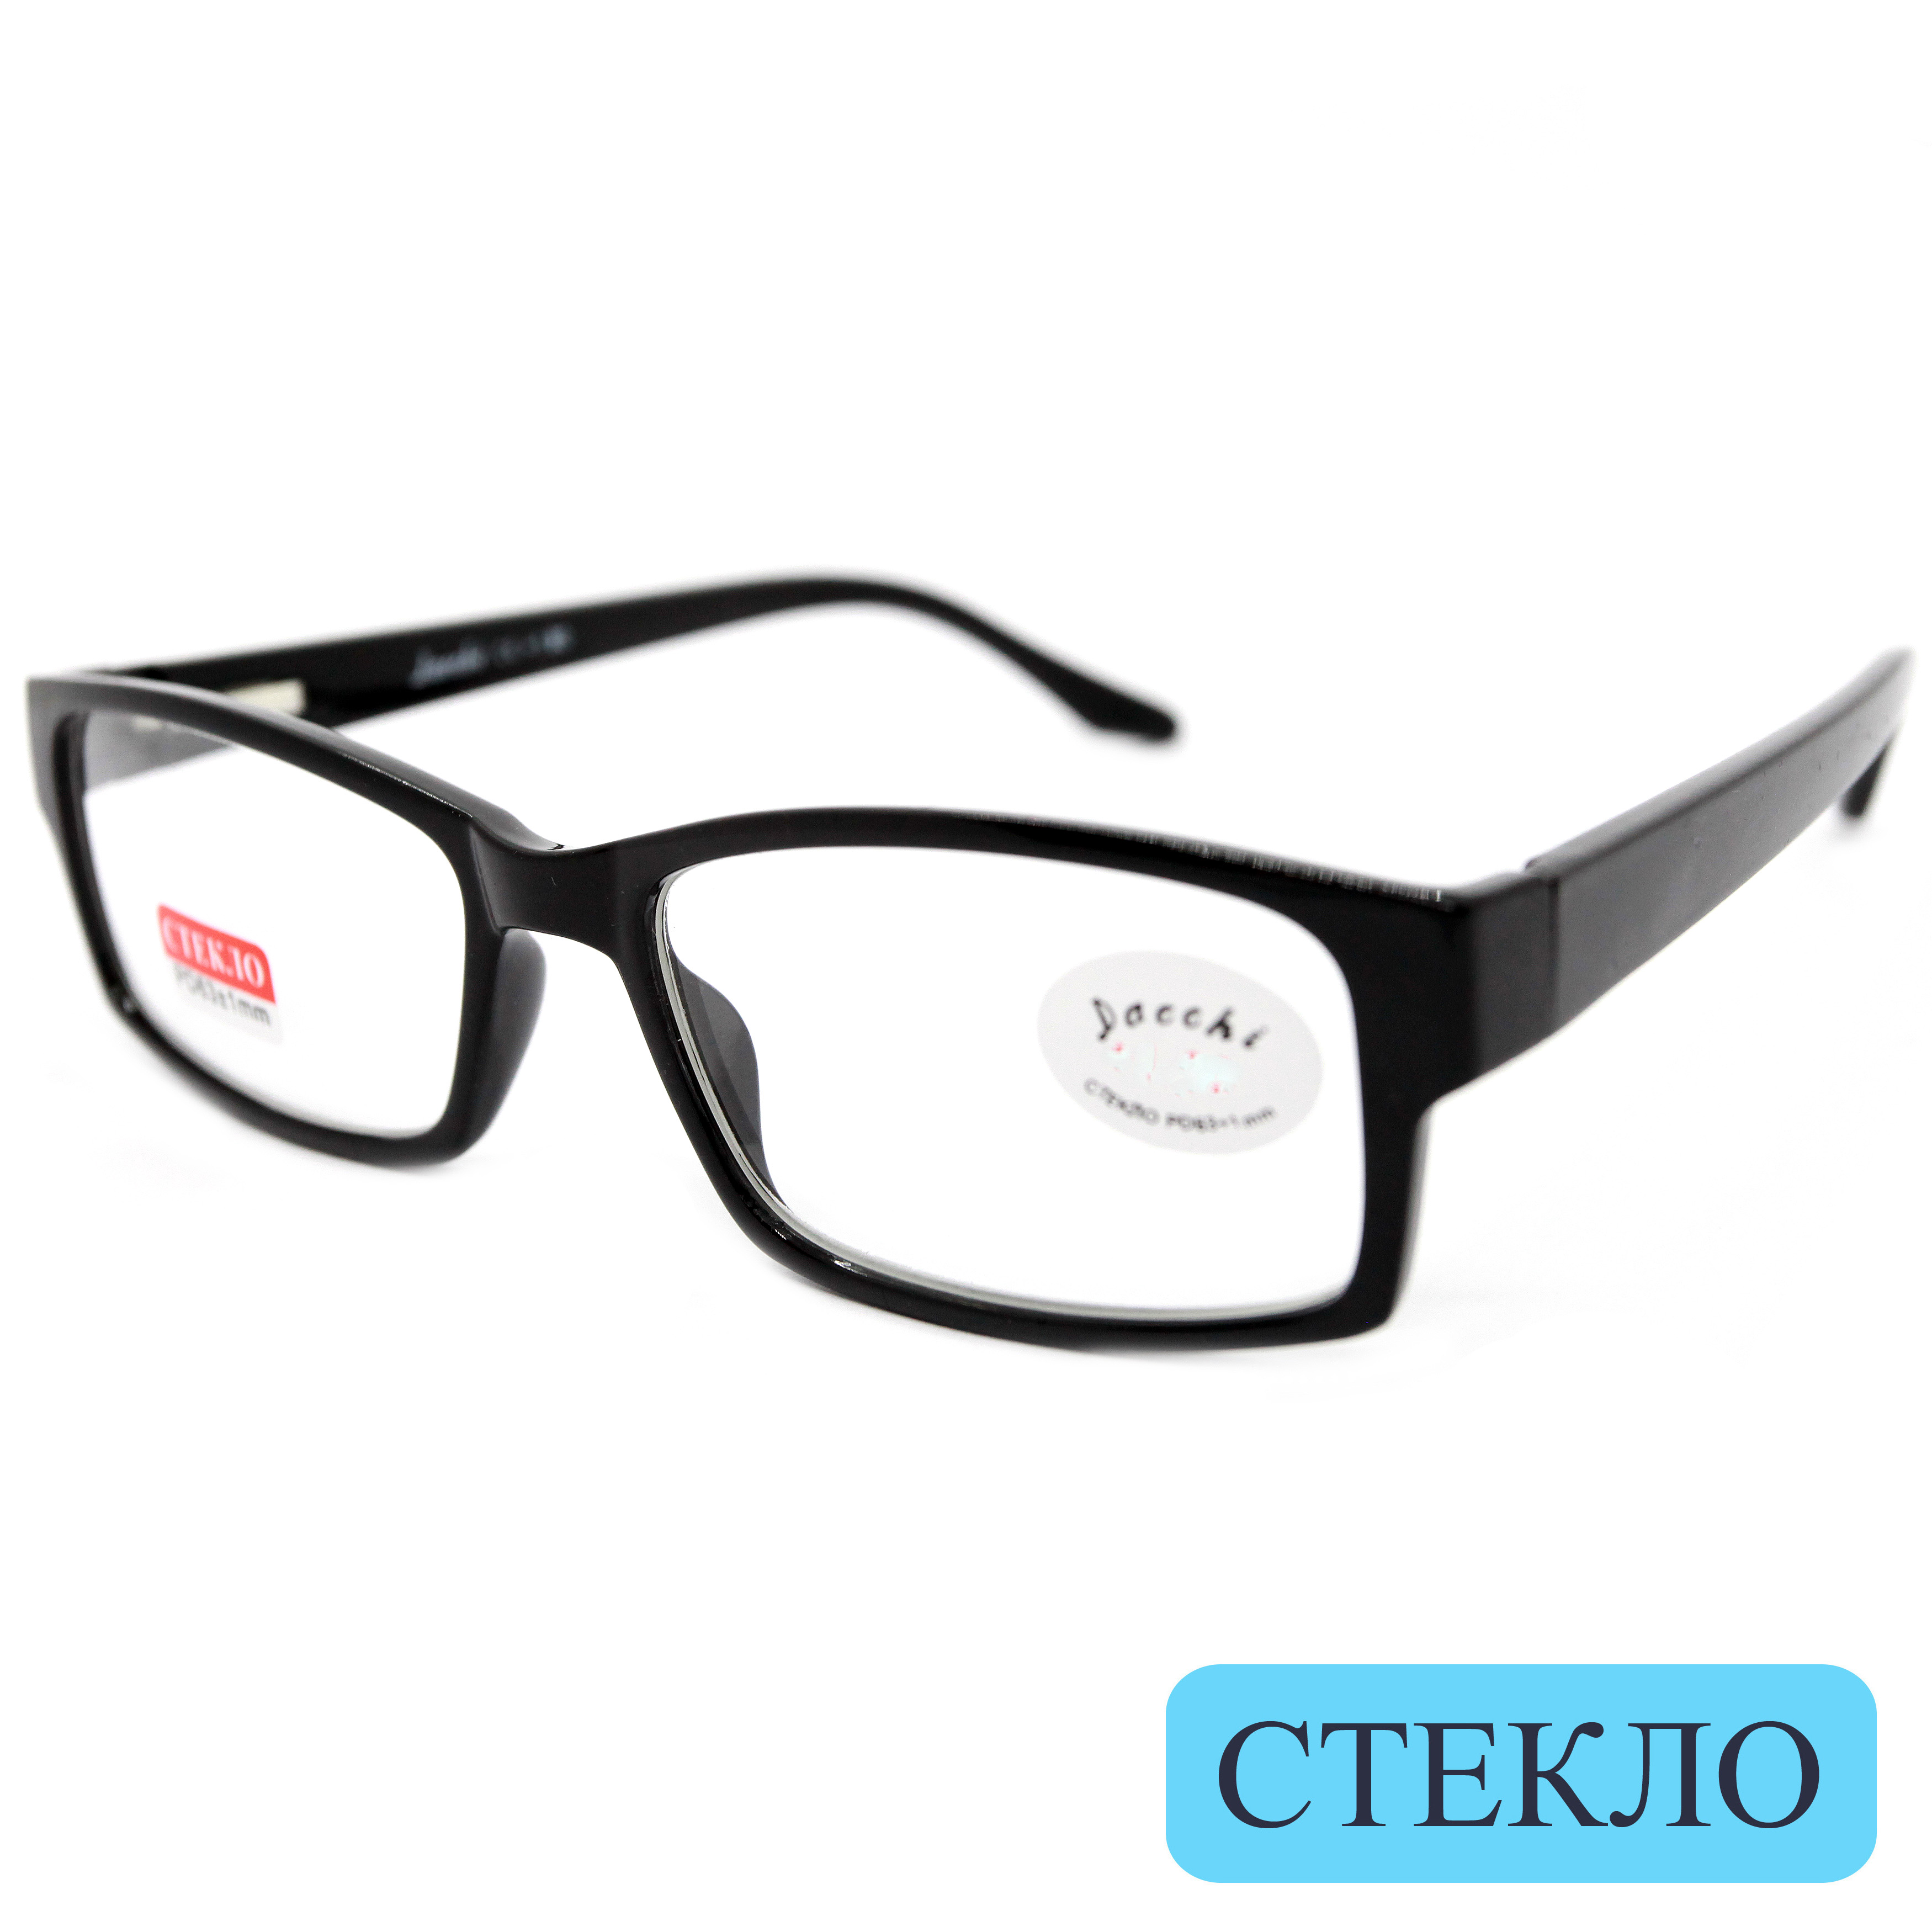 Готовые очки DACCHI 335, со стеклянной линзой, +1,25, без футляра, черные, РЦ 62-64